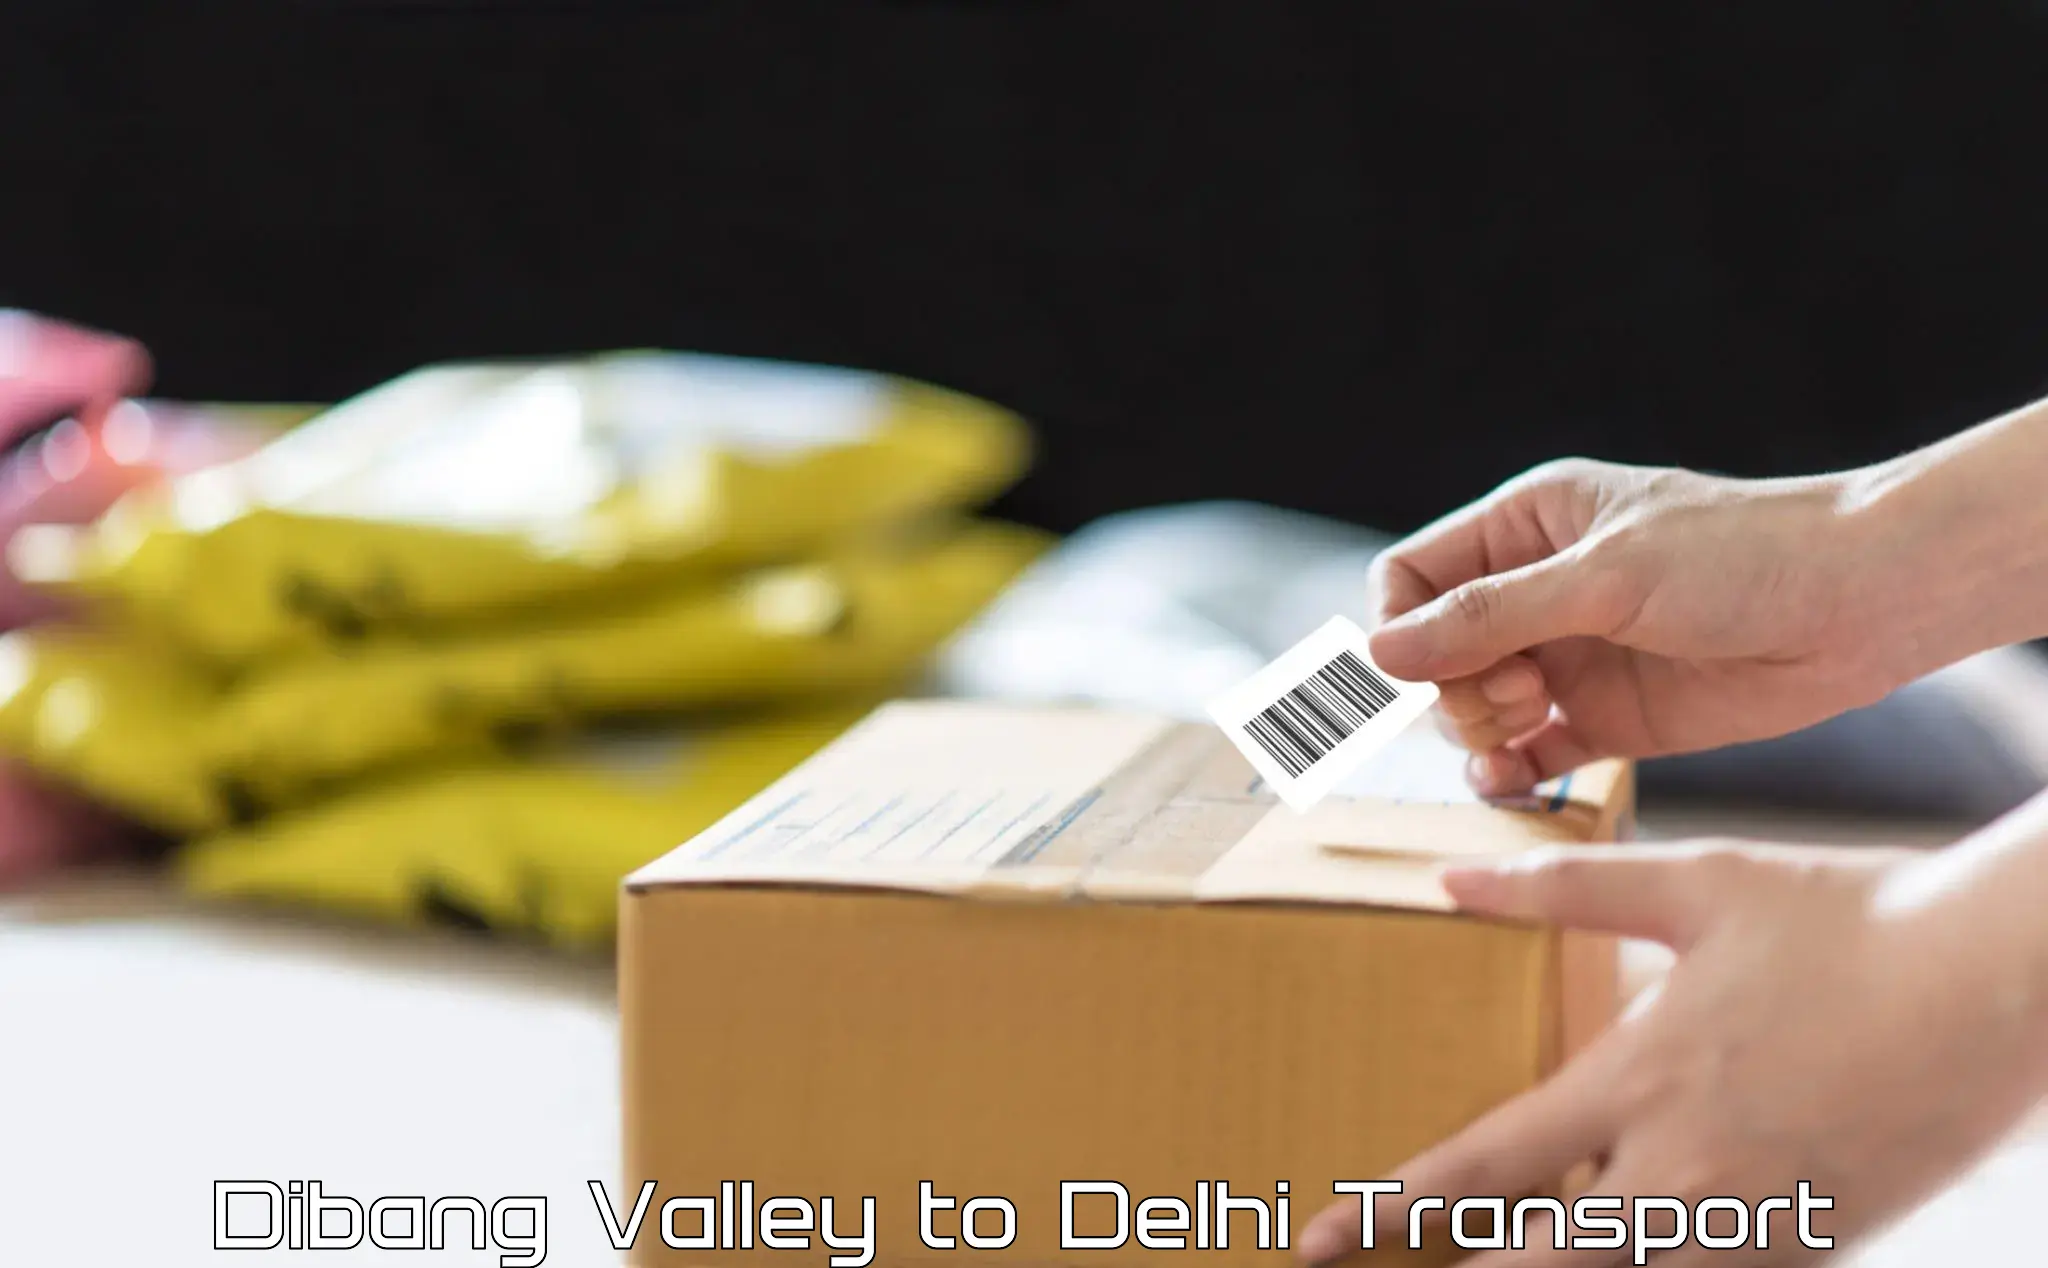 Cargo transport services Dibang Valley to Ashok Vihar